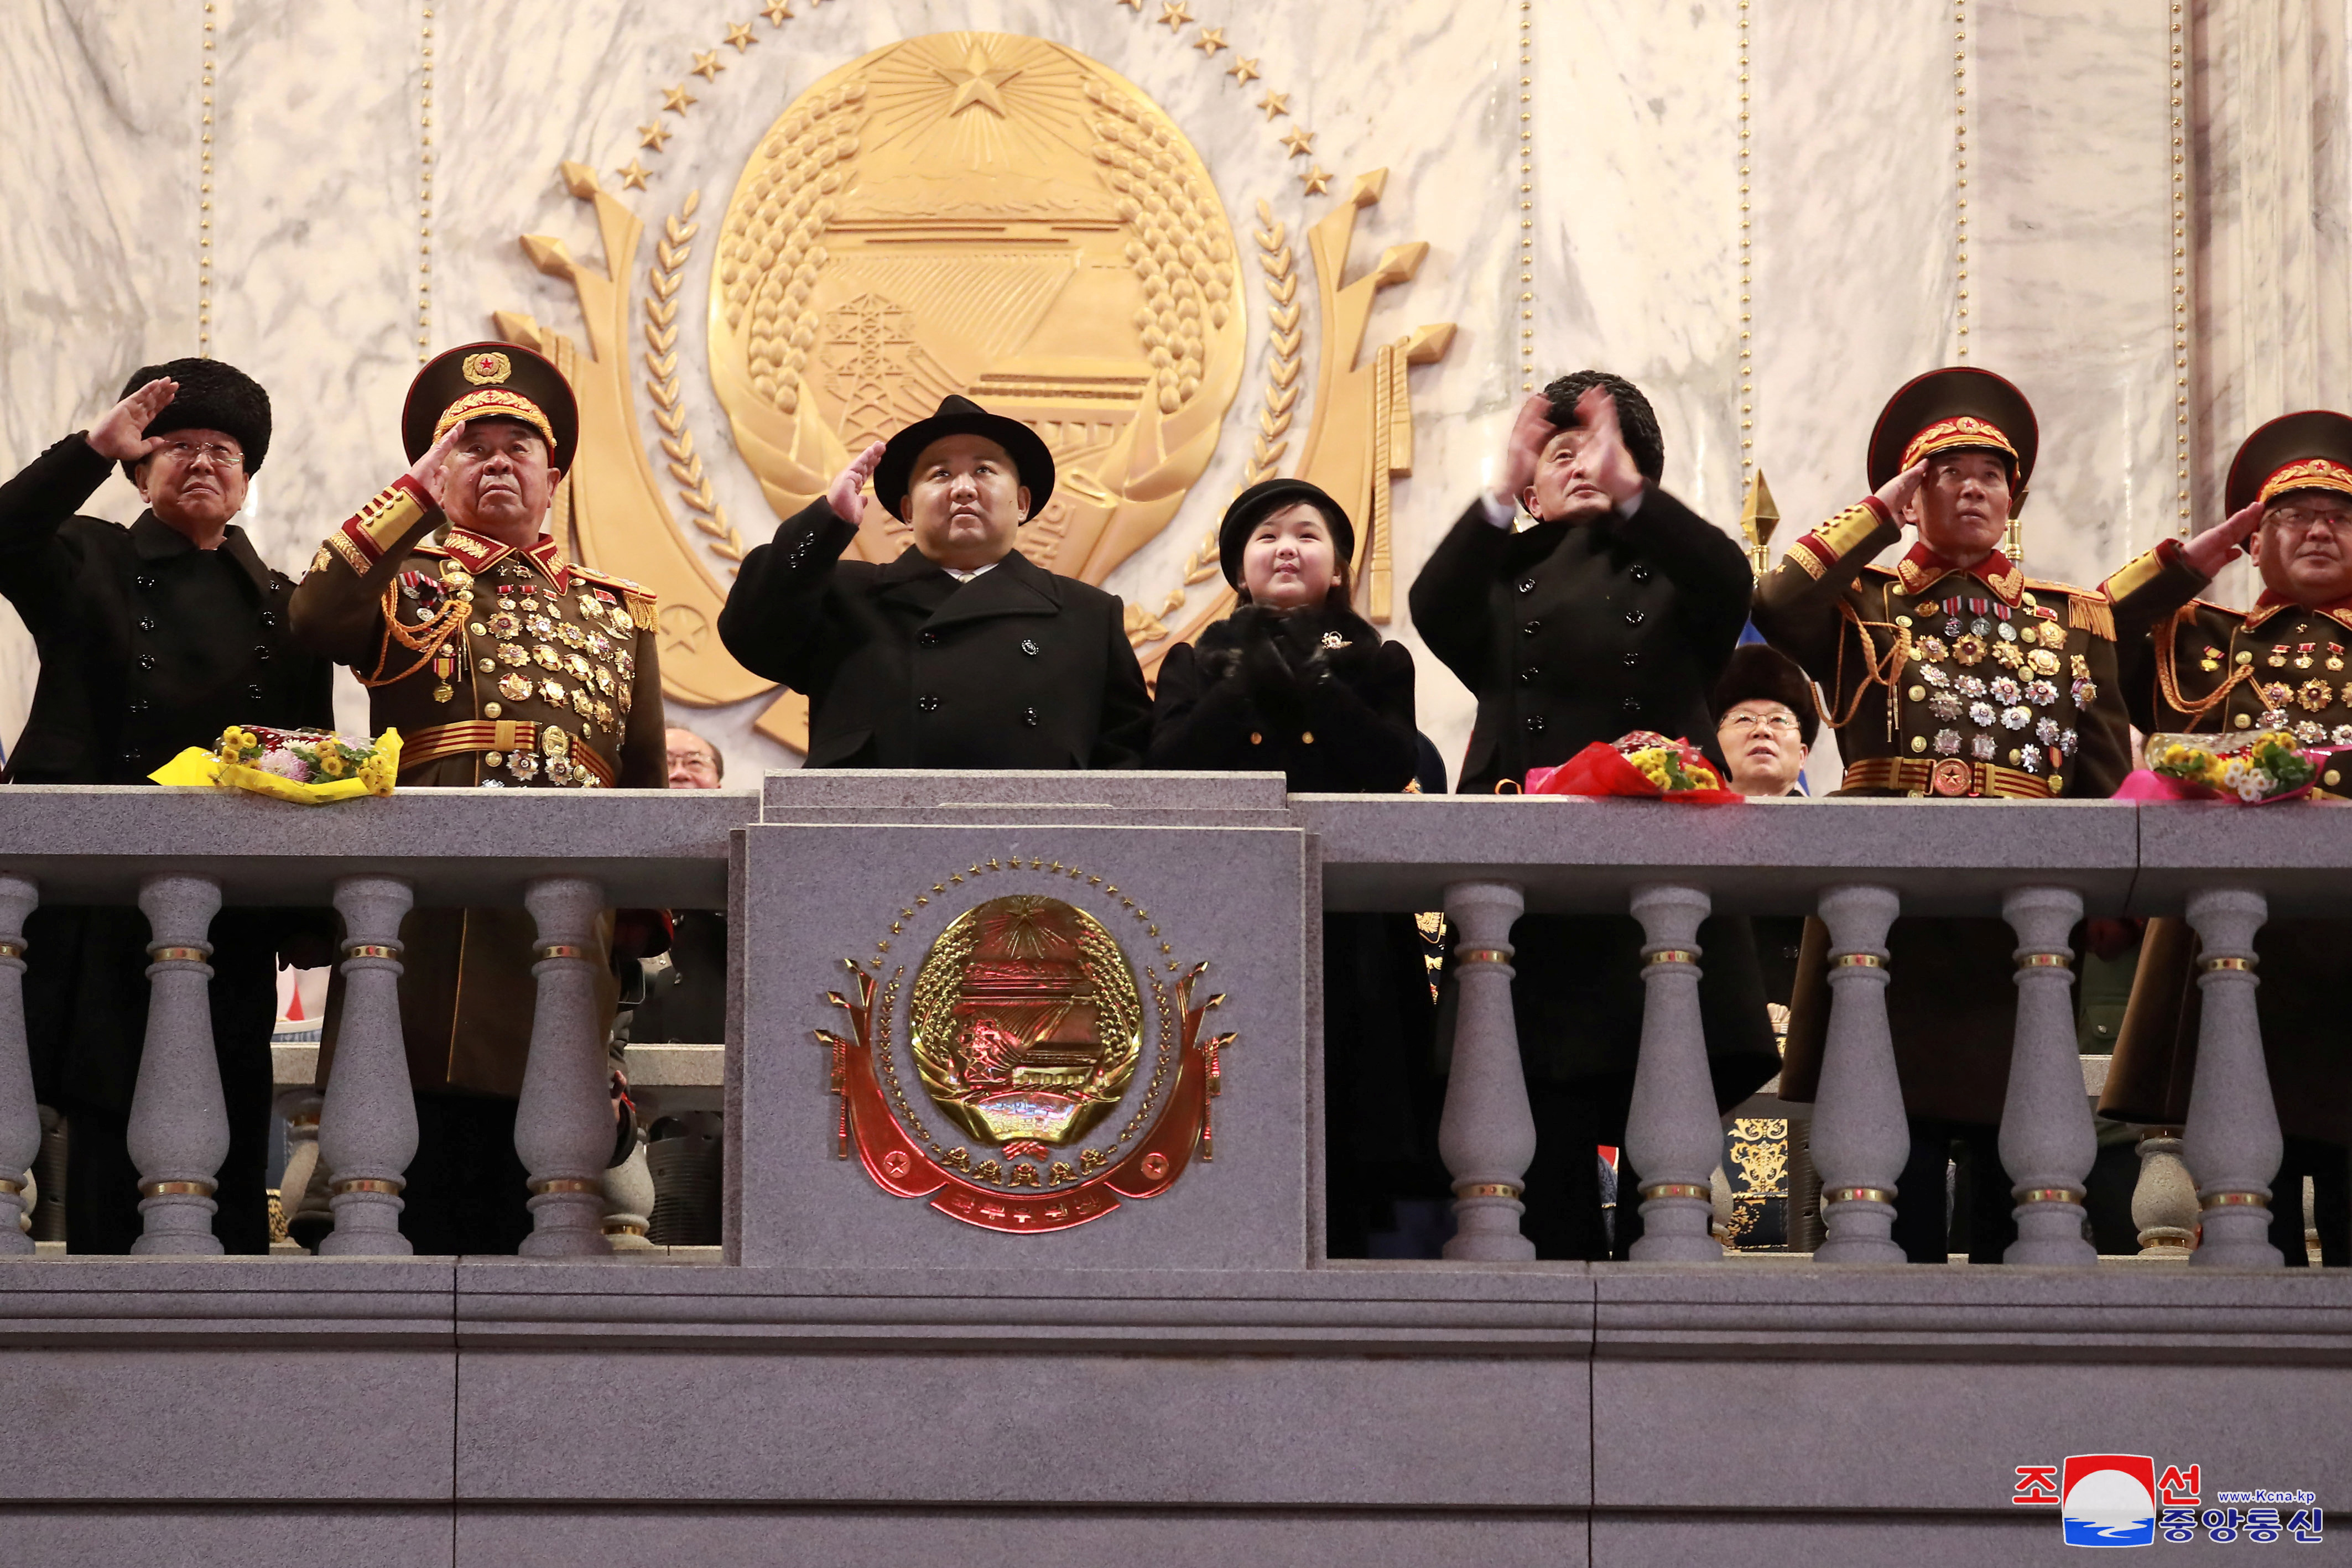 Kim junto a los generales y su hija Ju-ae